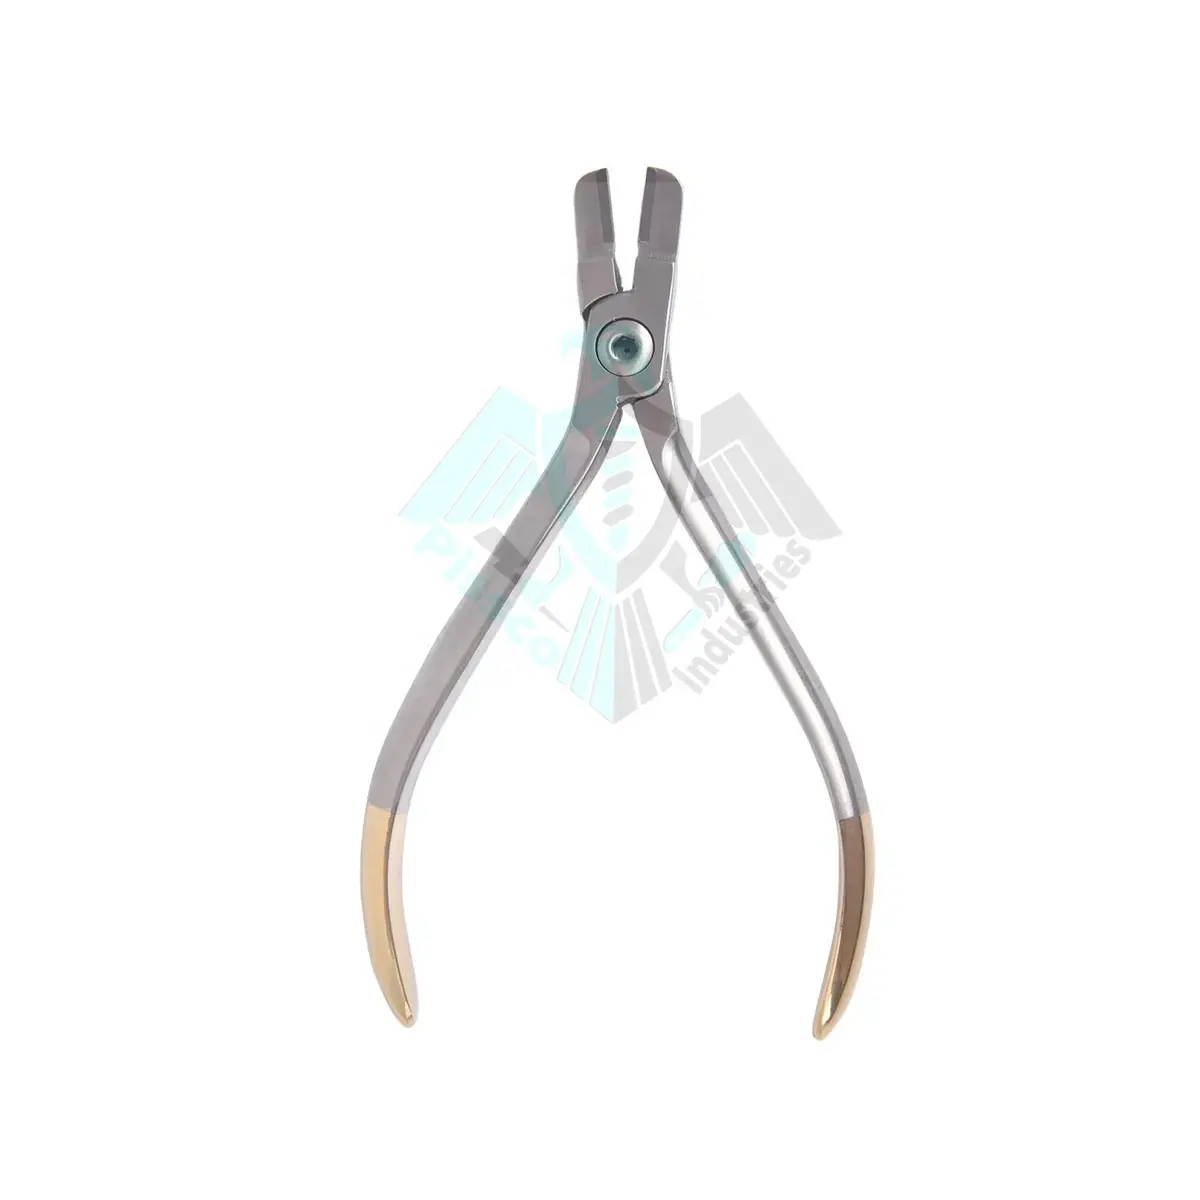 Best Supplier Pissco Dental Instruments Orthodontic Tweed Arch Bending Pliers Loop Forming Pliers Stainless Steel